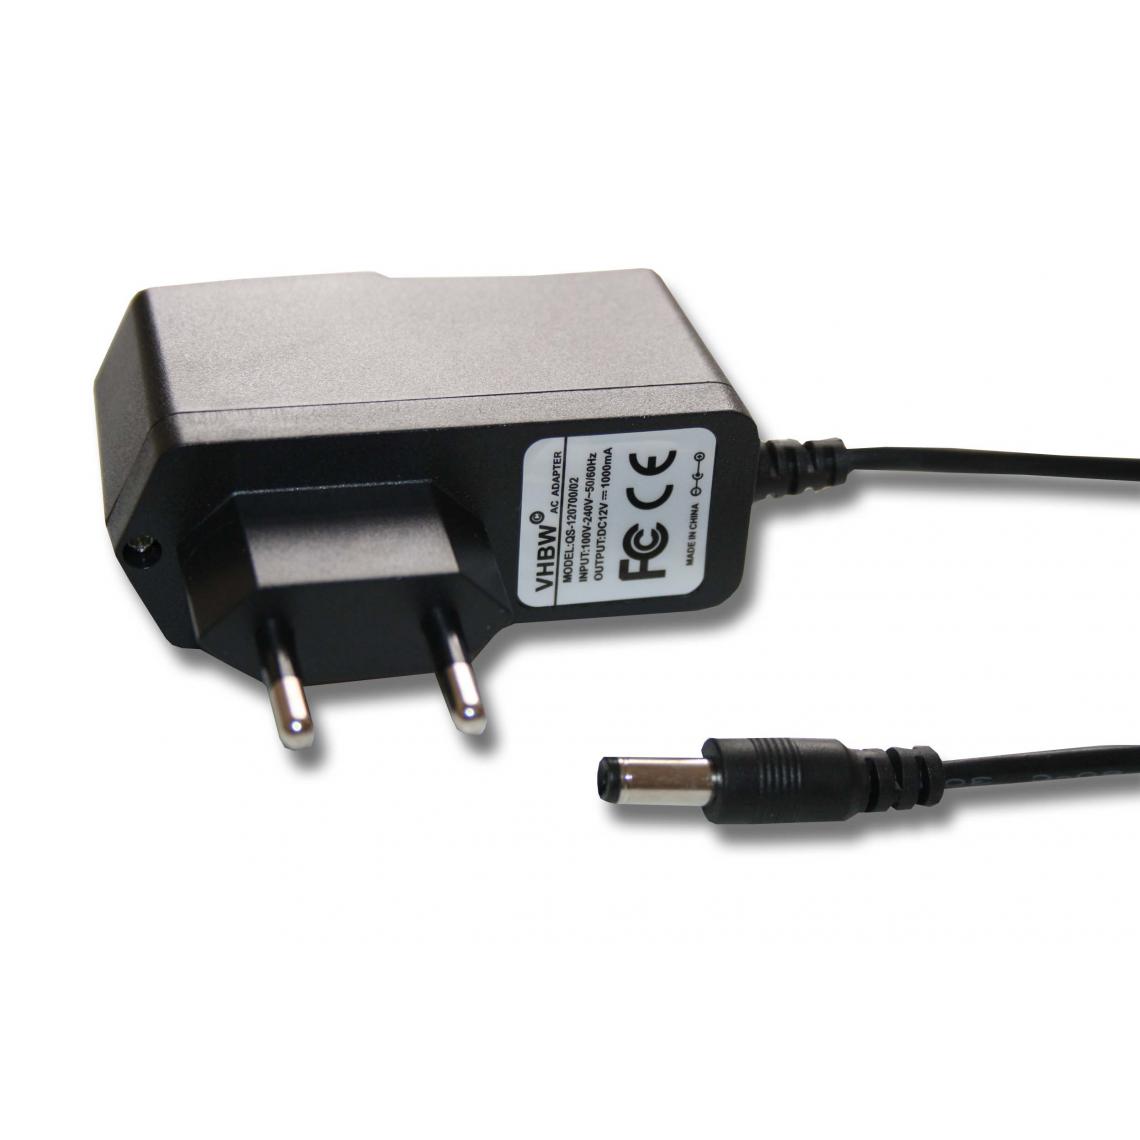 Vhbw - Chargeur pour divers transformateurs, LED-Controller, SMD, RGB - Autre appareil de mesure